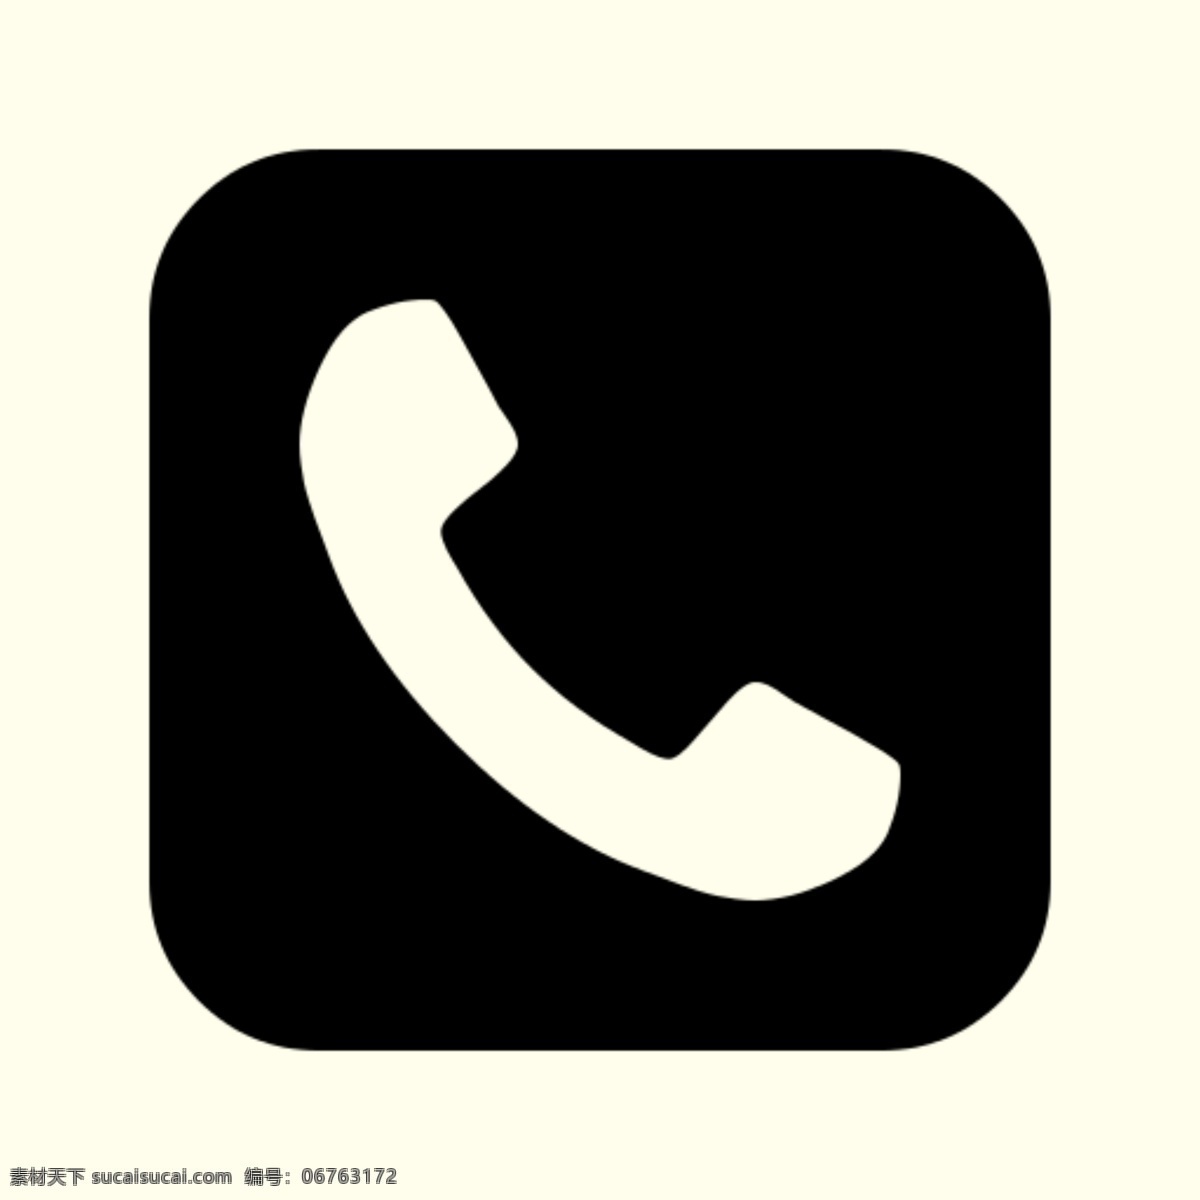 联系电话 标志 图标 电话